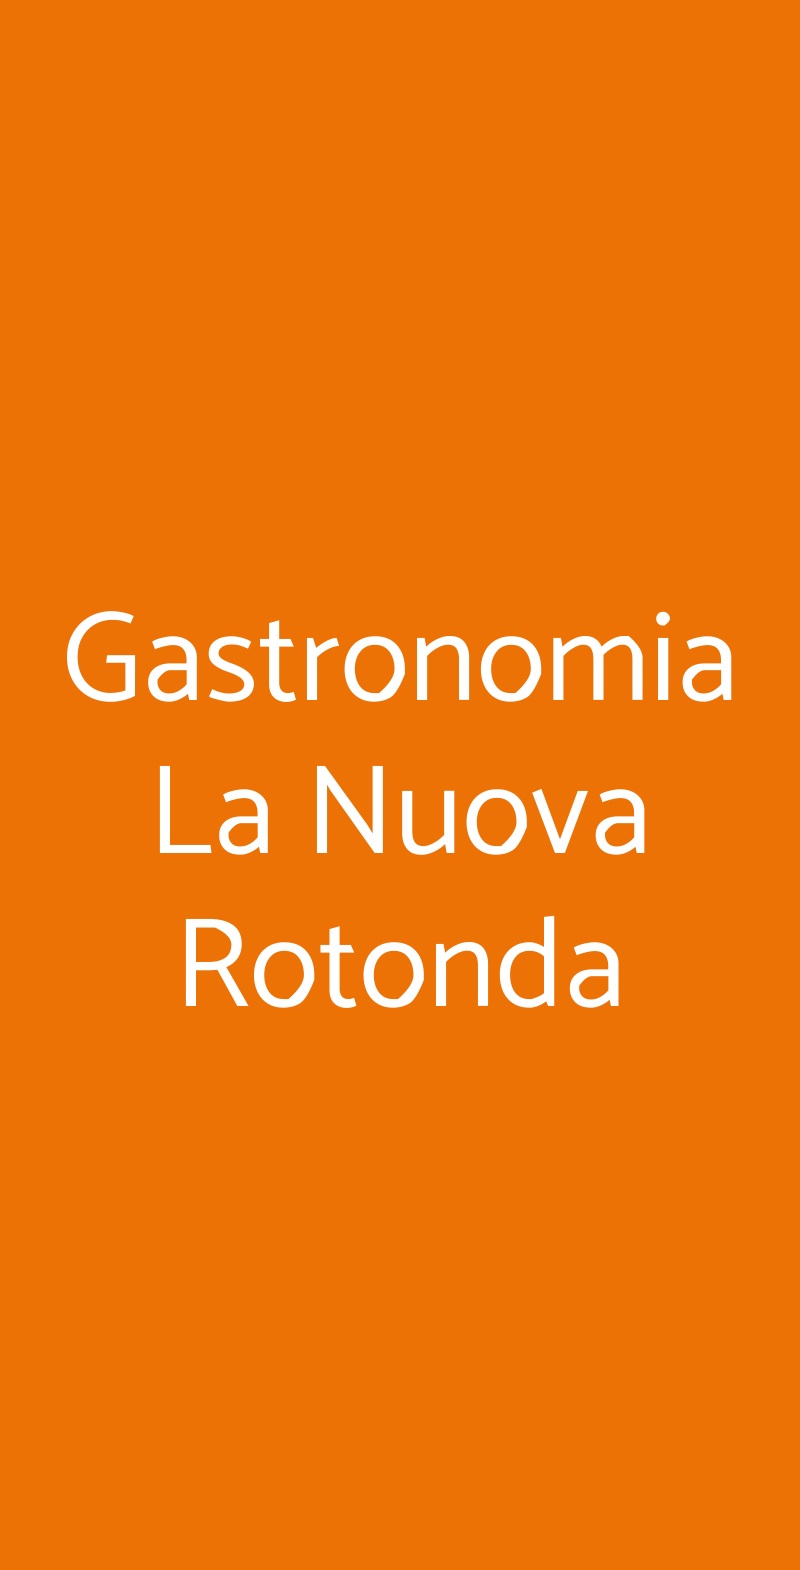 Gastronomia La Nuova Rotonda Andria menù 1 pagina